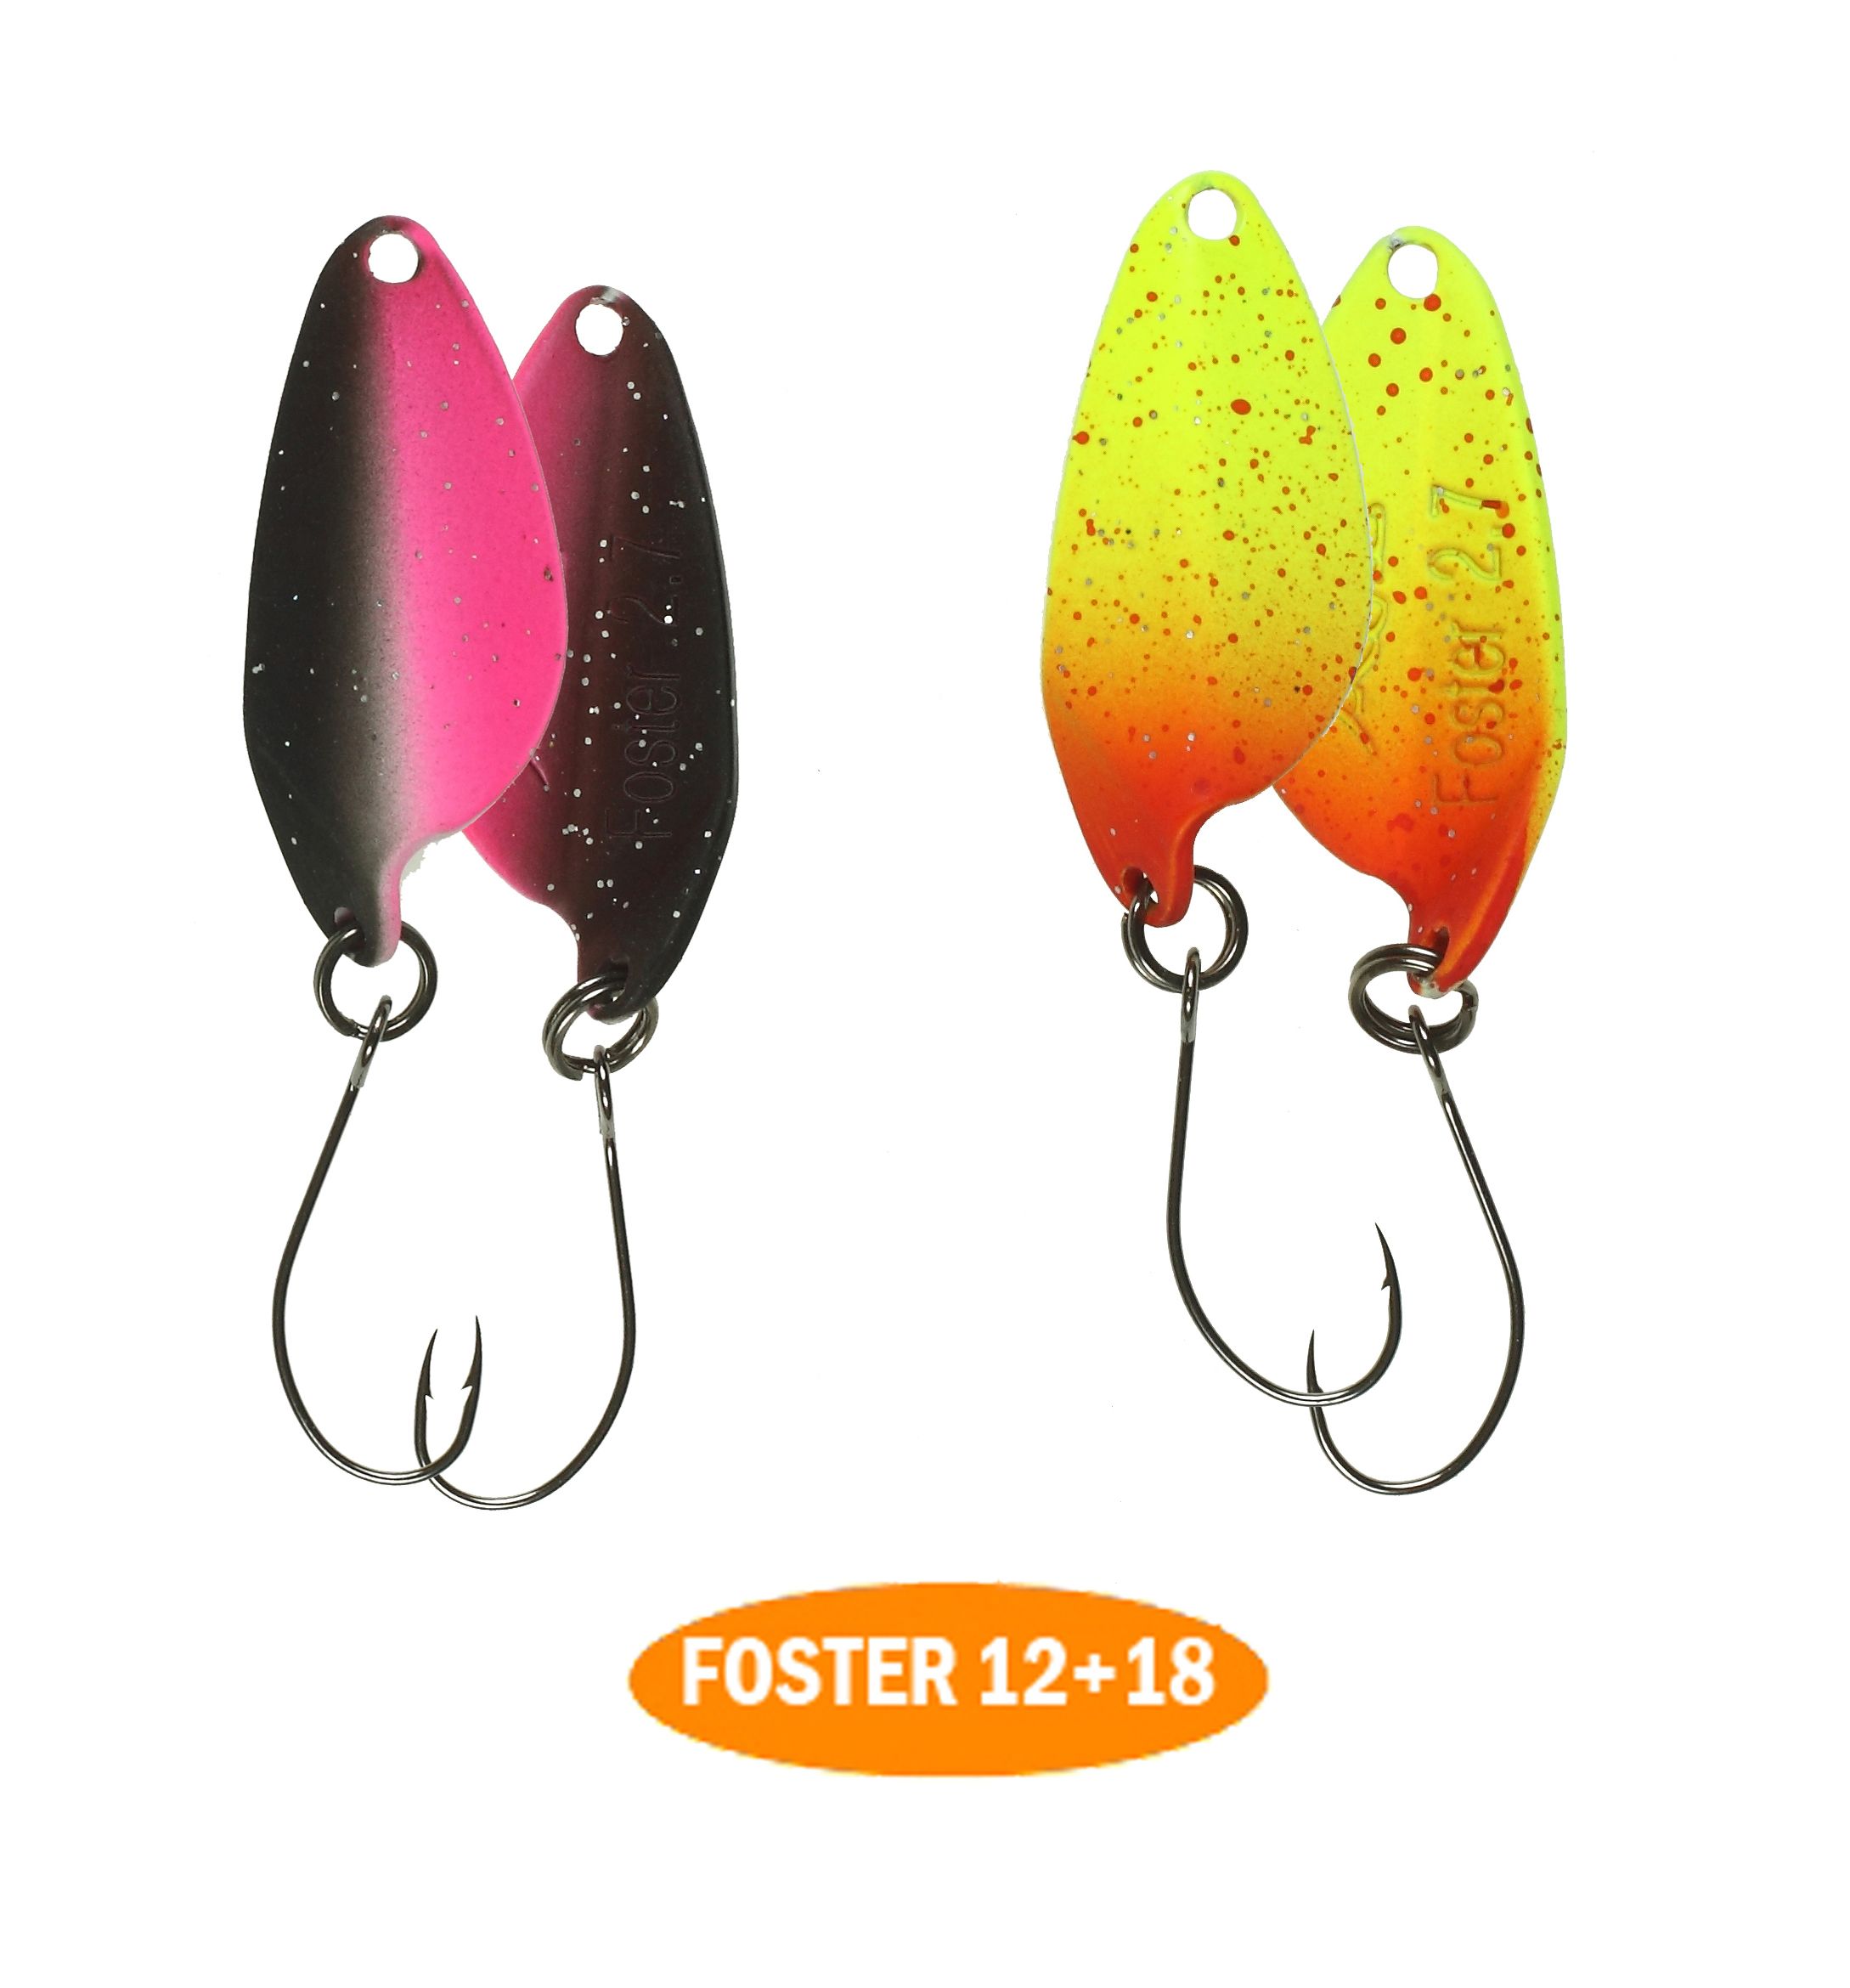 микроколебло  Foster  2.7g  цвет 12+18  с безбородым крючком  (уп. 2шт.)